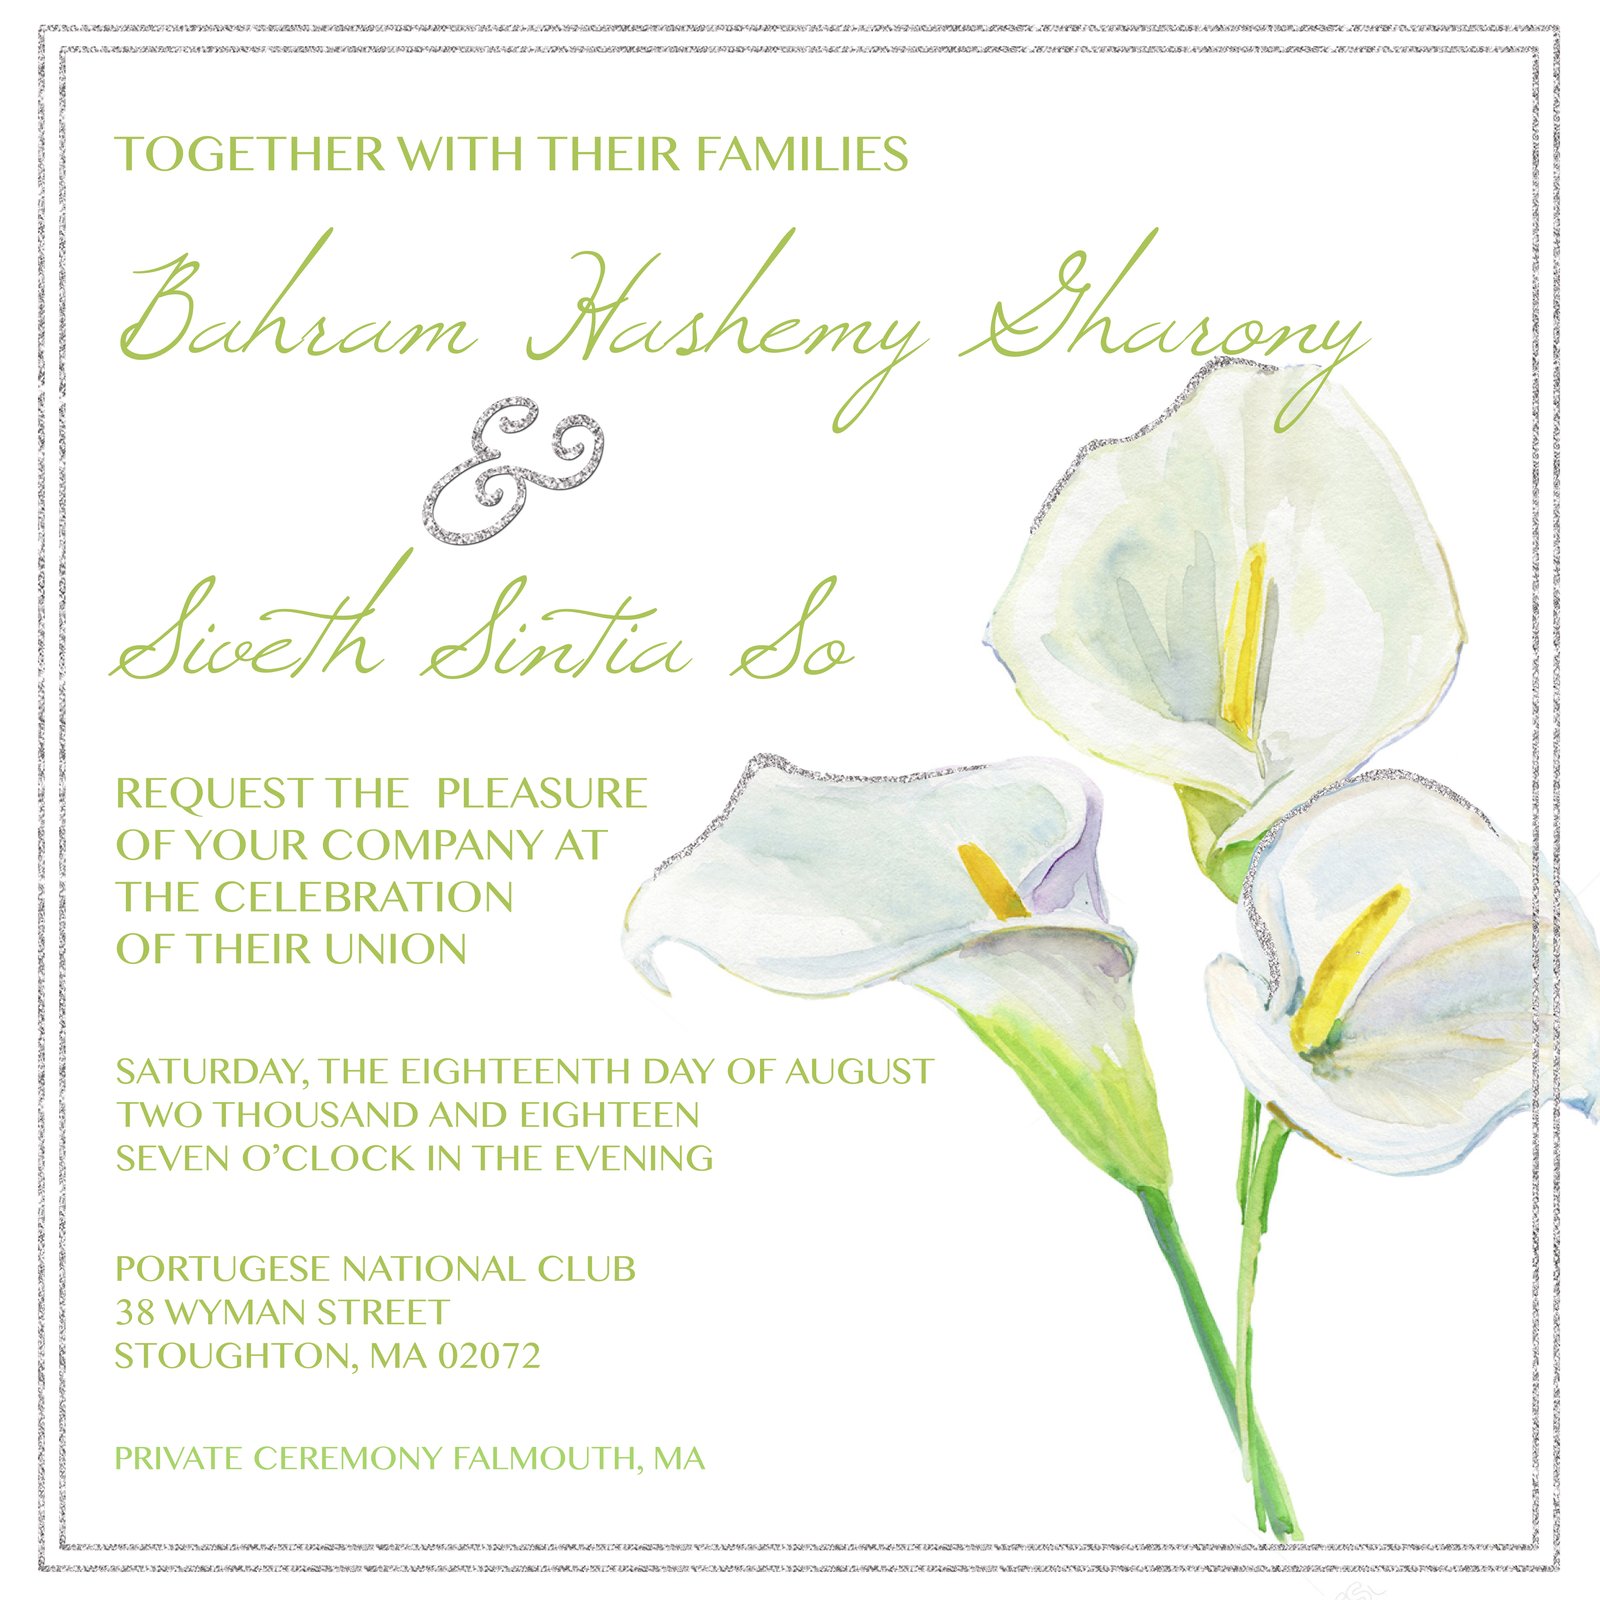 calla lily wedding invitations